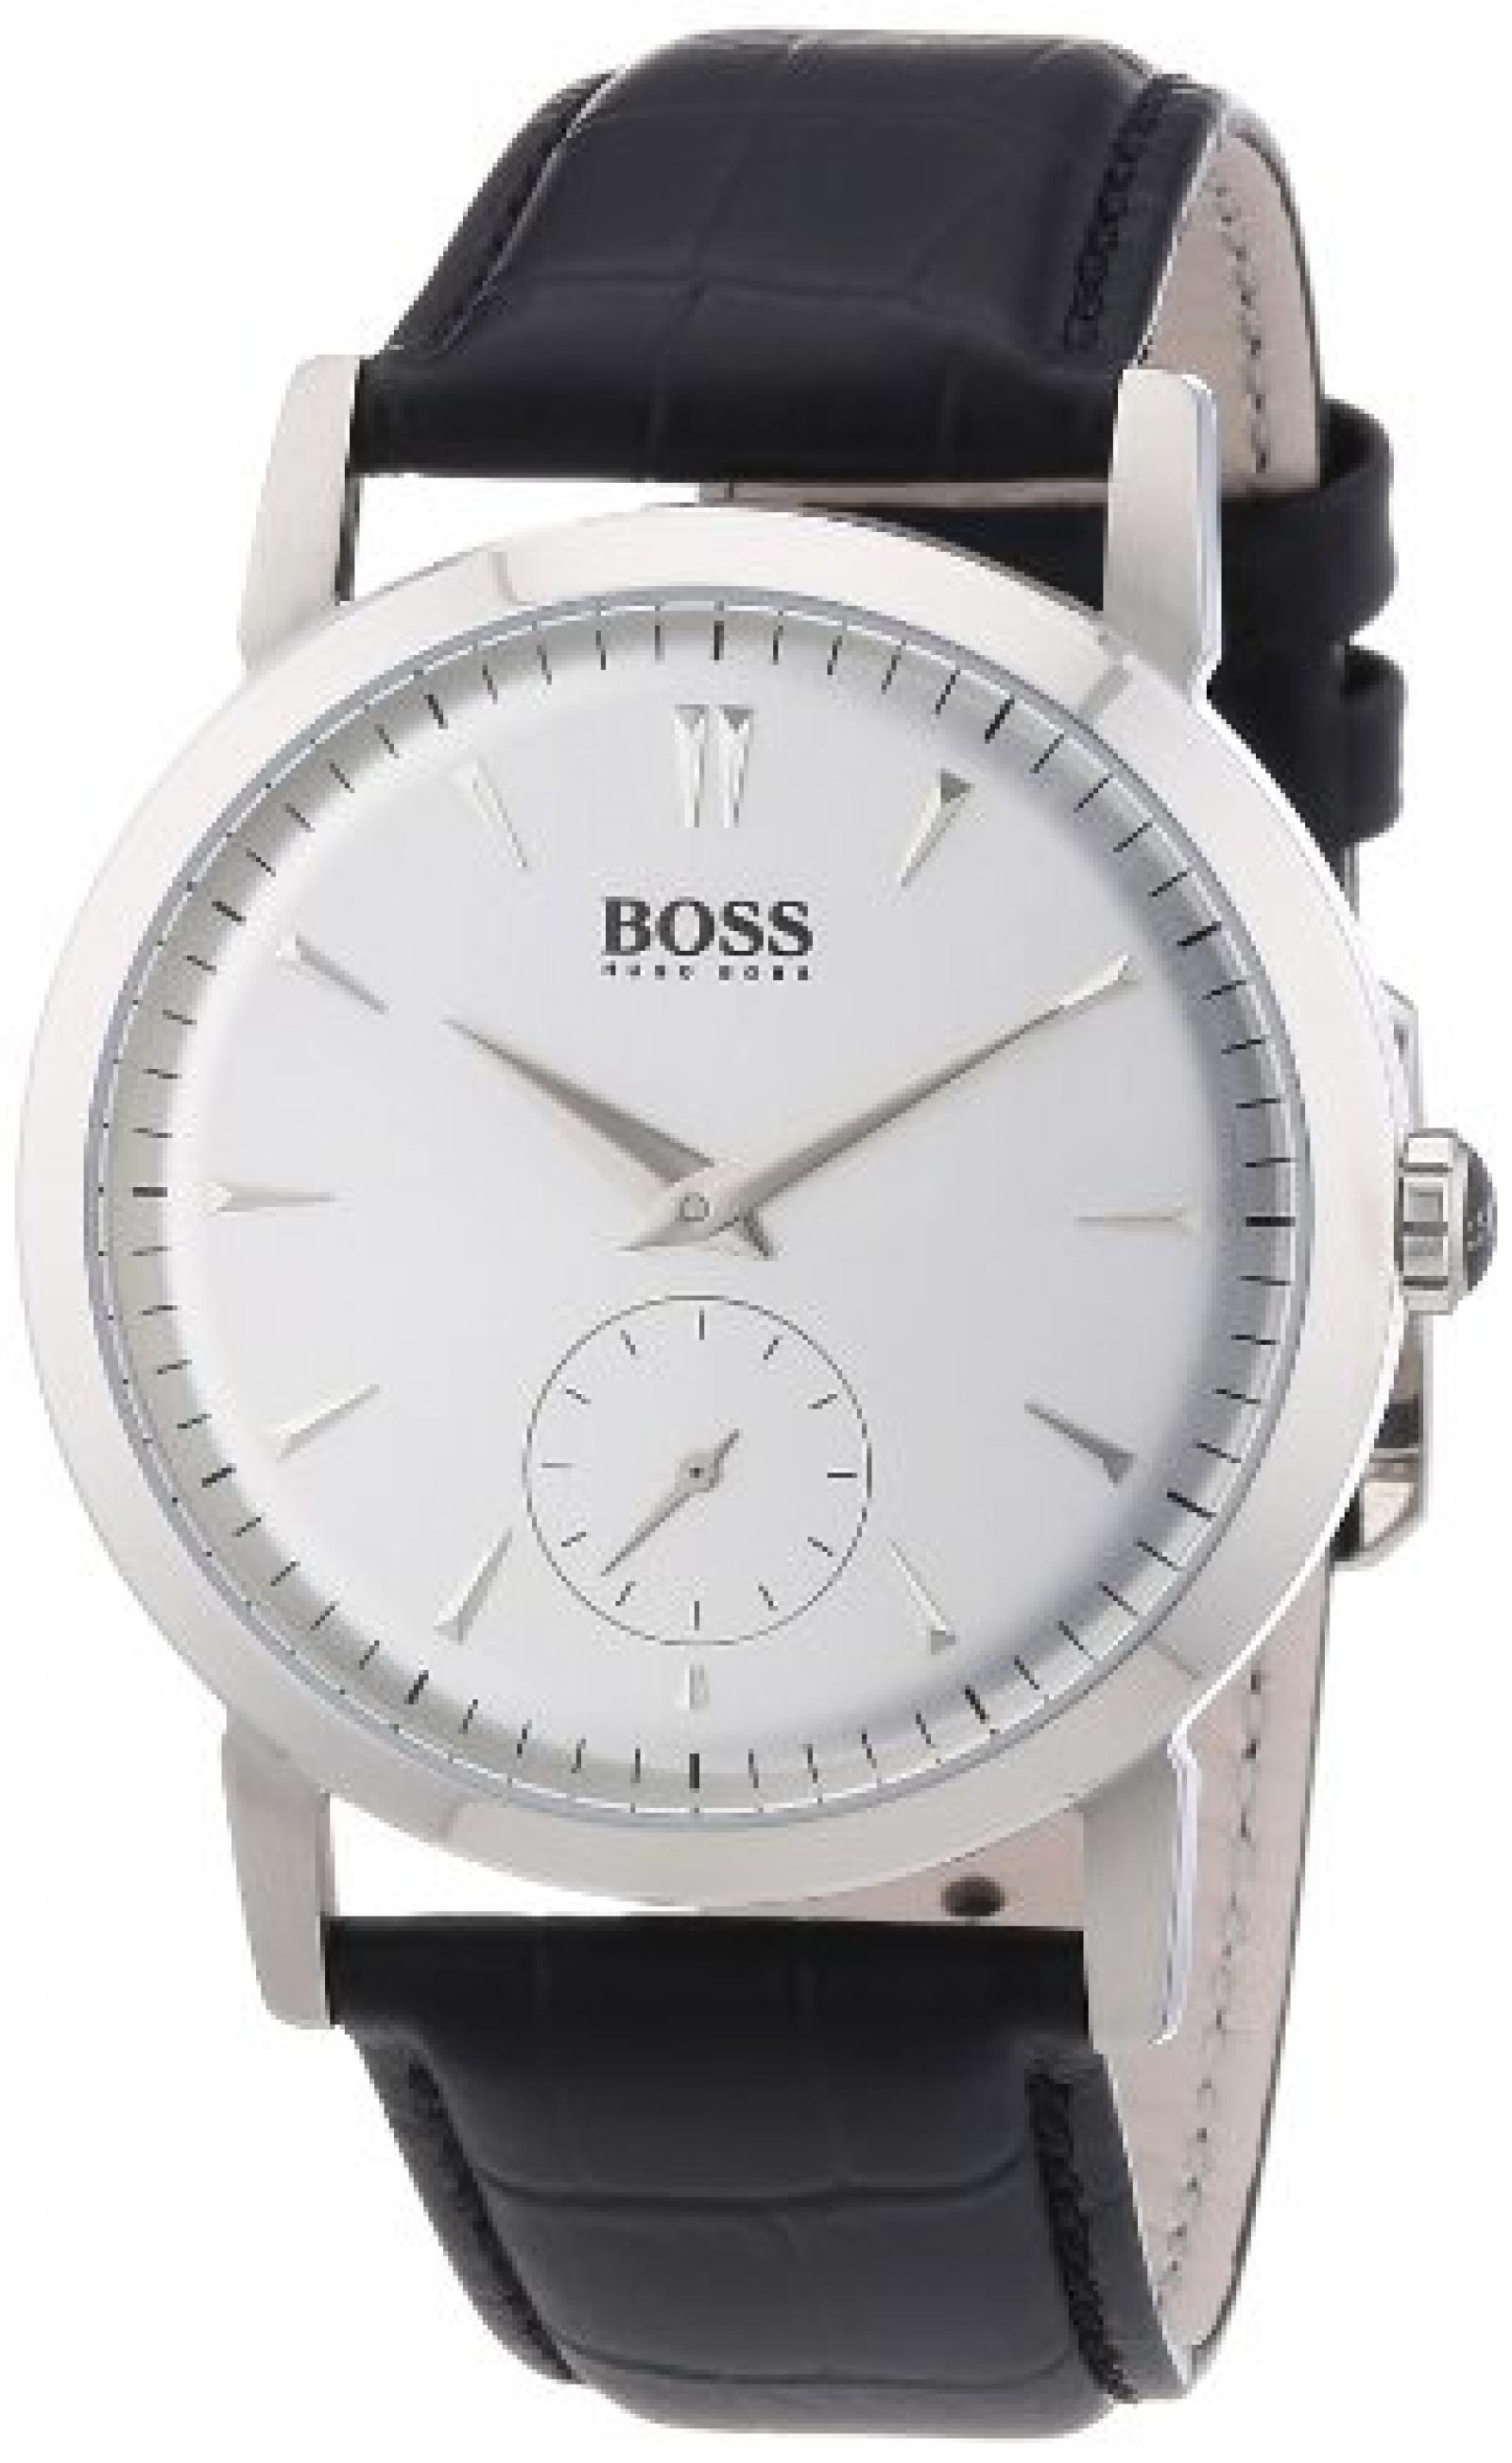 Hugo Boss Herren-Armbanduhr XL Analog Quarz Leder 1512774 